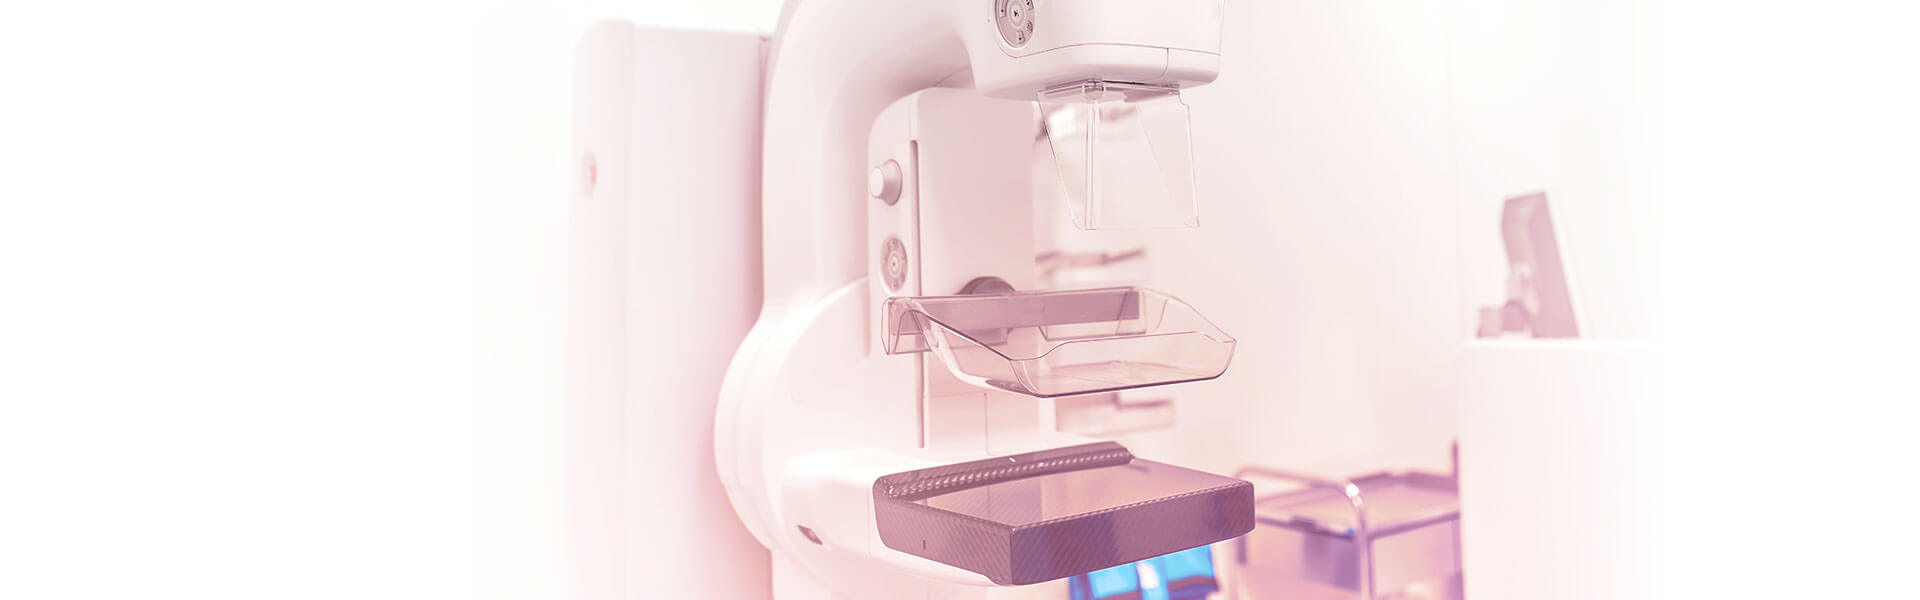 Existe algum exame que possa substituir a mamografia no rastreamento do câncer de mama?